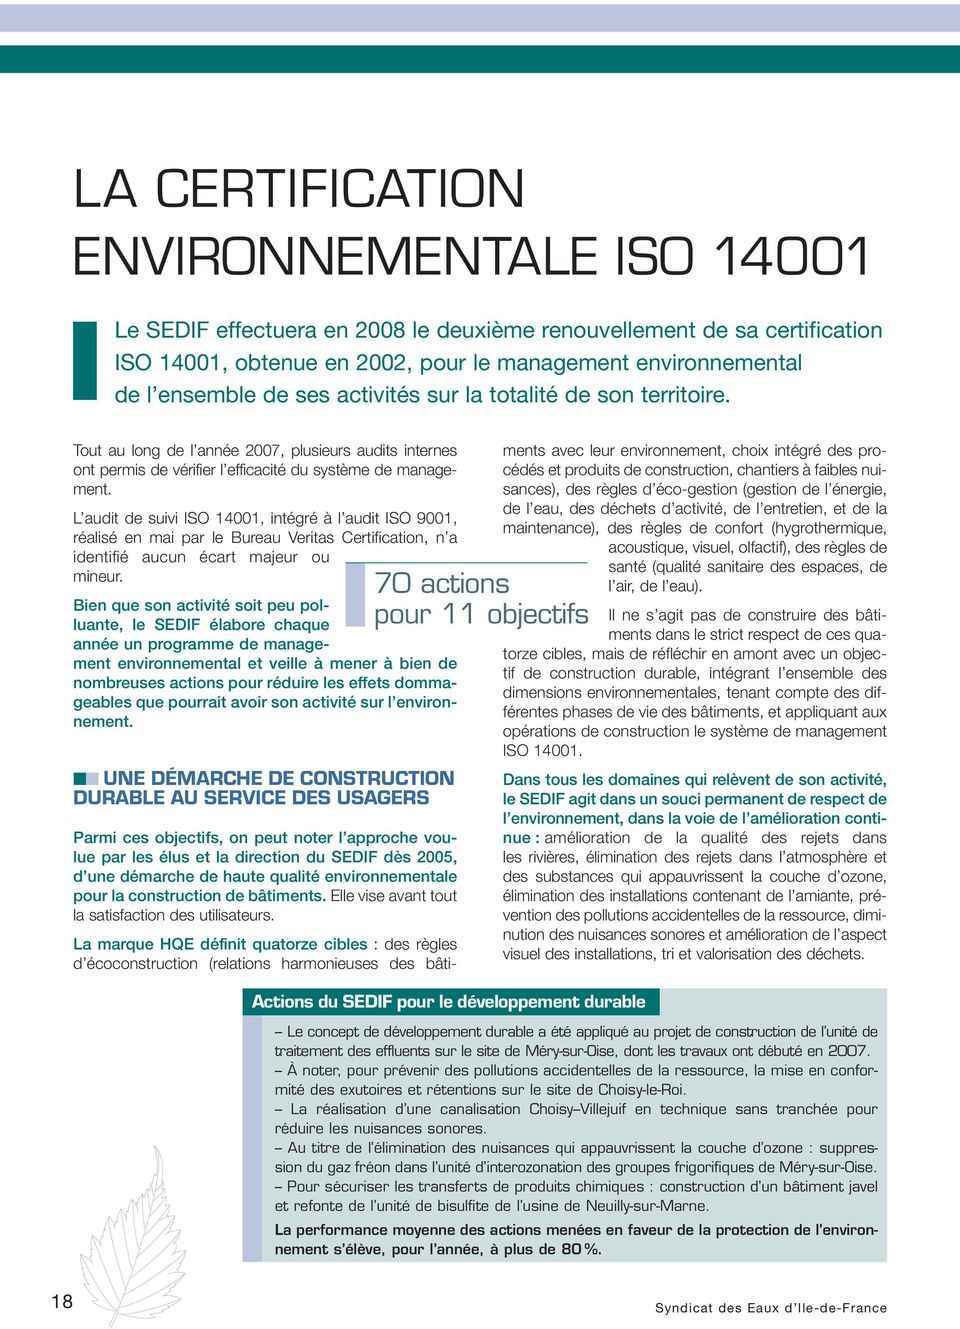 L audit de suivi ISO 14001, intégré à l audit ISO 9001, réalisé en mai par le Bureau Veritas Certification, n a identifié aucun écart majeur ou mineur.